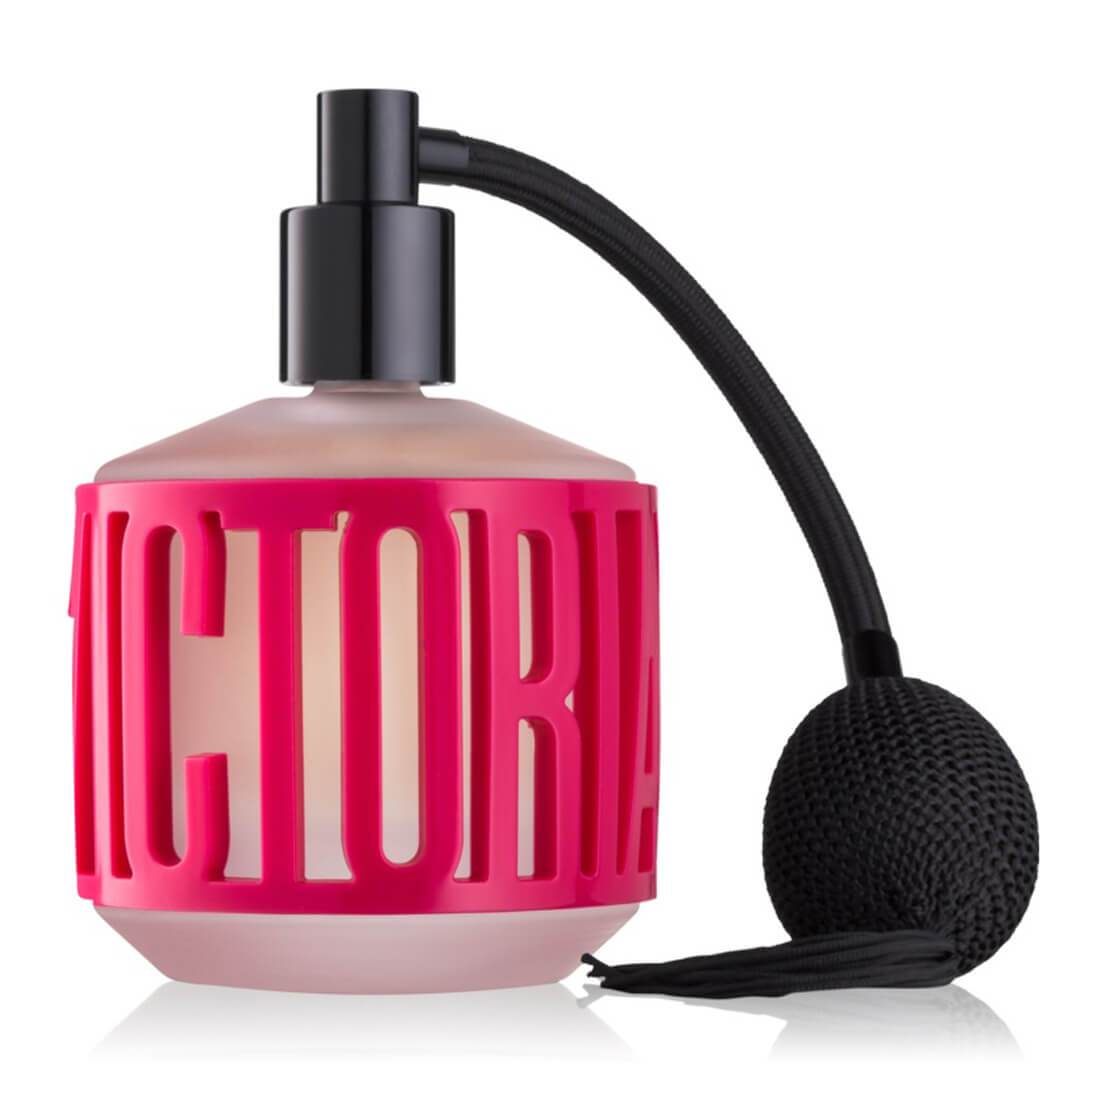 Victoria Secret Love Me More Perfume -100ml